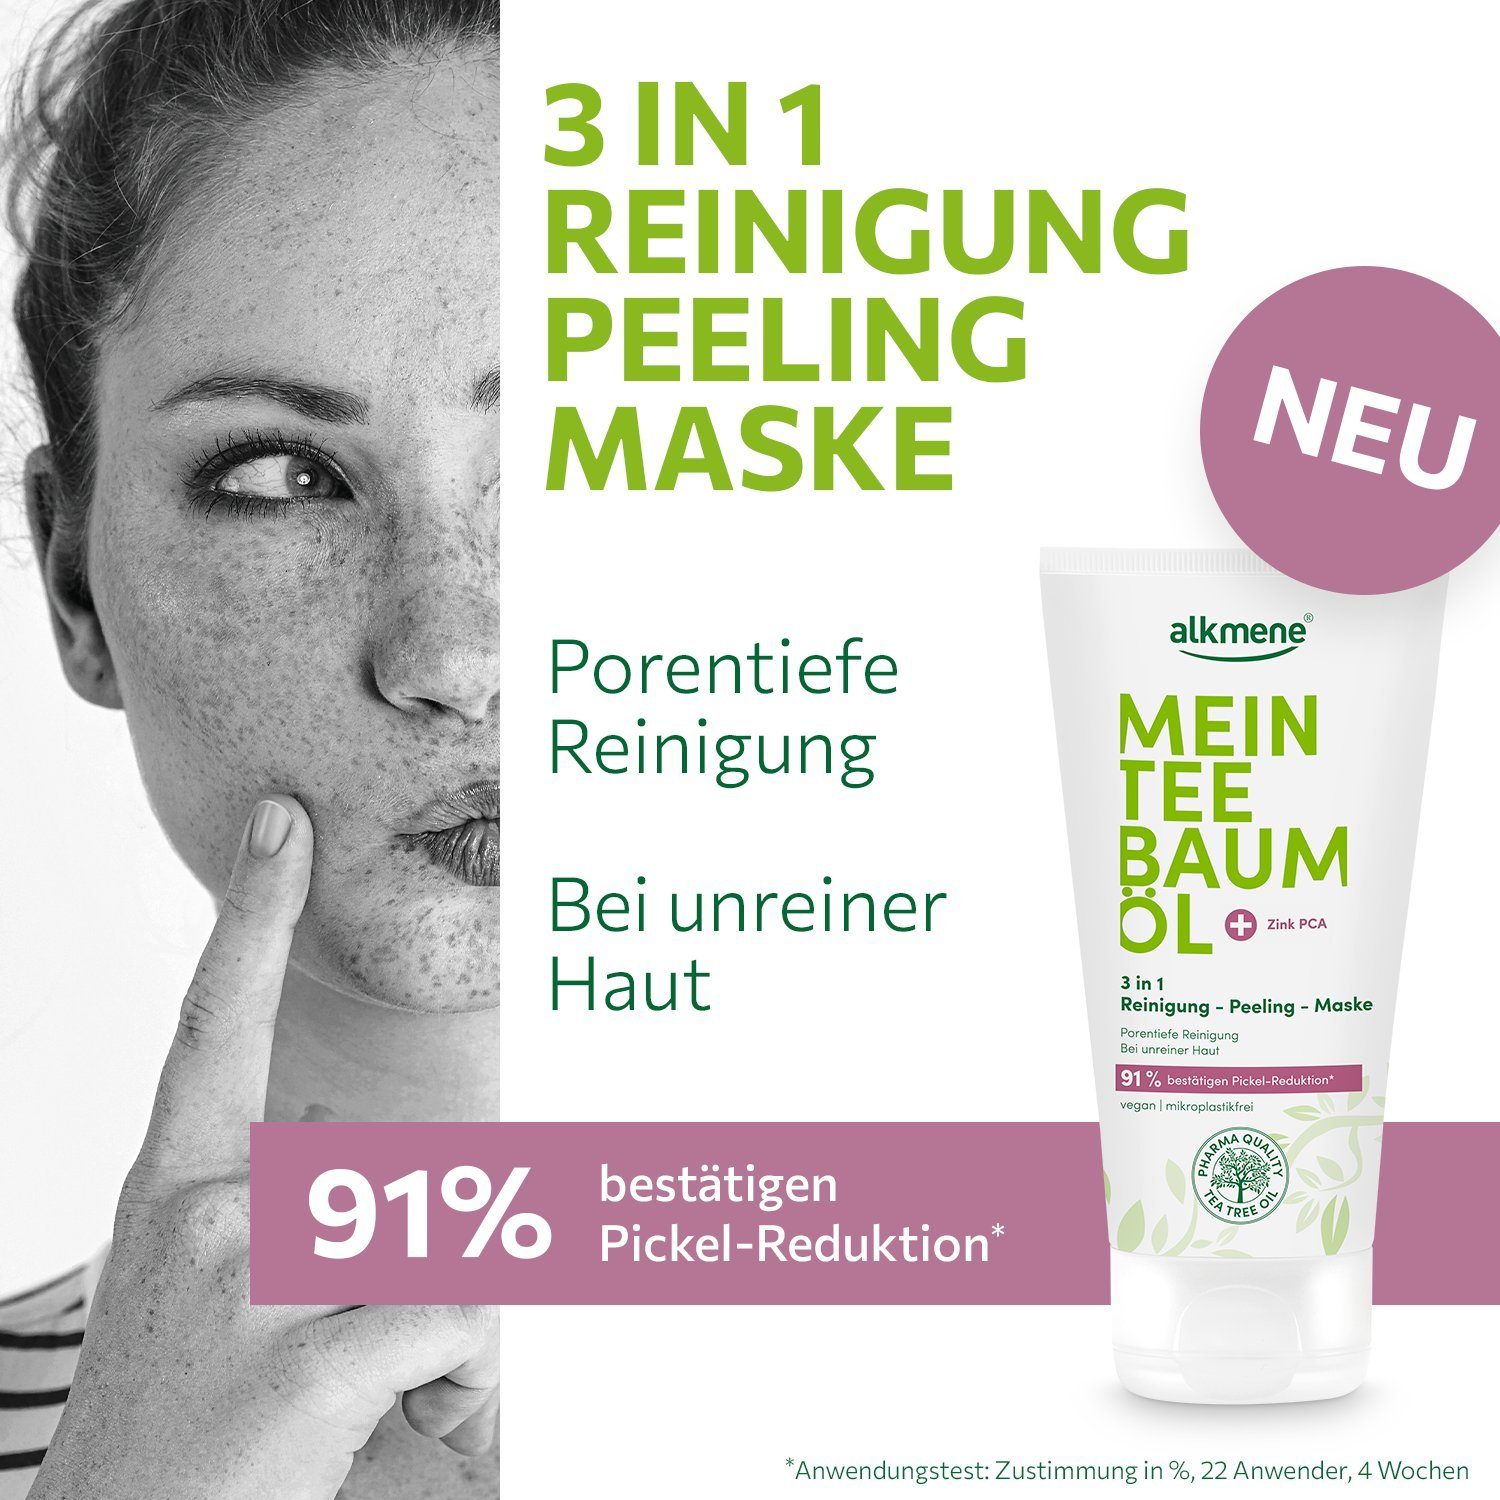 - Reduktion Pickel Reinigung 91% 1-tlg. 150 Körperpeeling 3in1 bestätigt, alkmene Peeling Maske ml